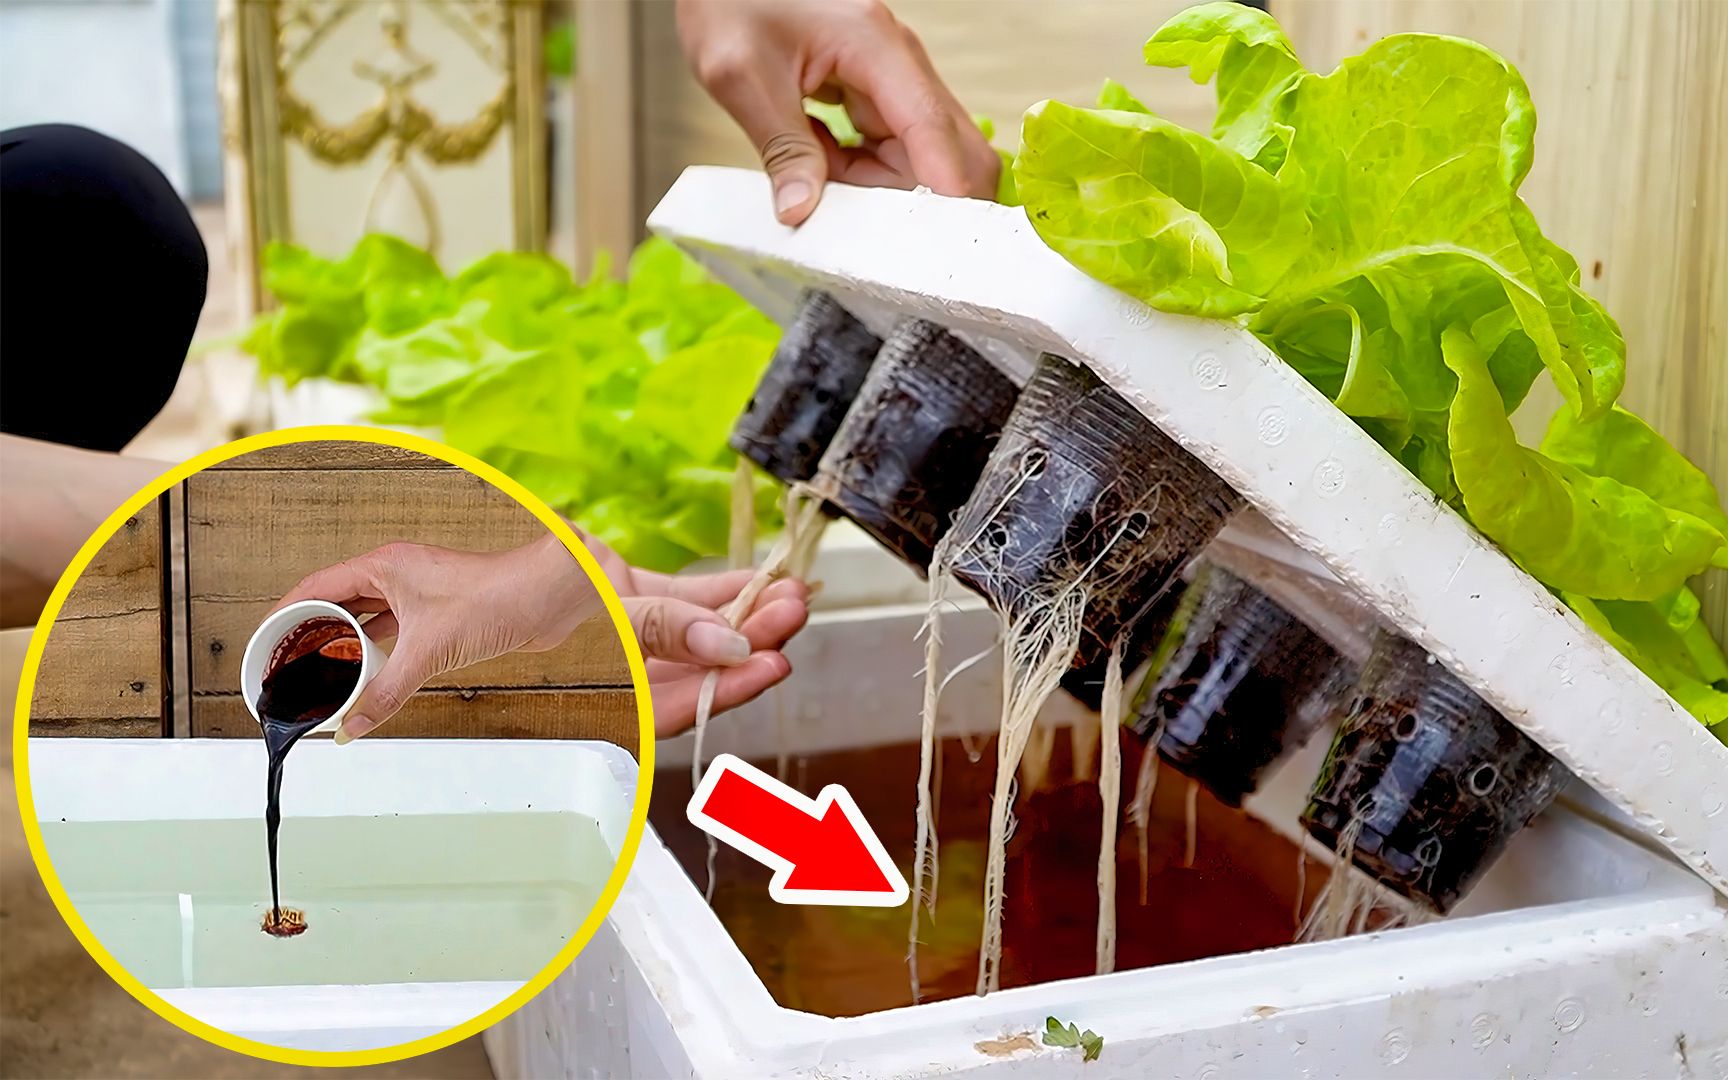 简单又有趣!利用泡沫箱和水培技巧,在家种出新鲜绿叶生菜!